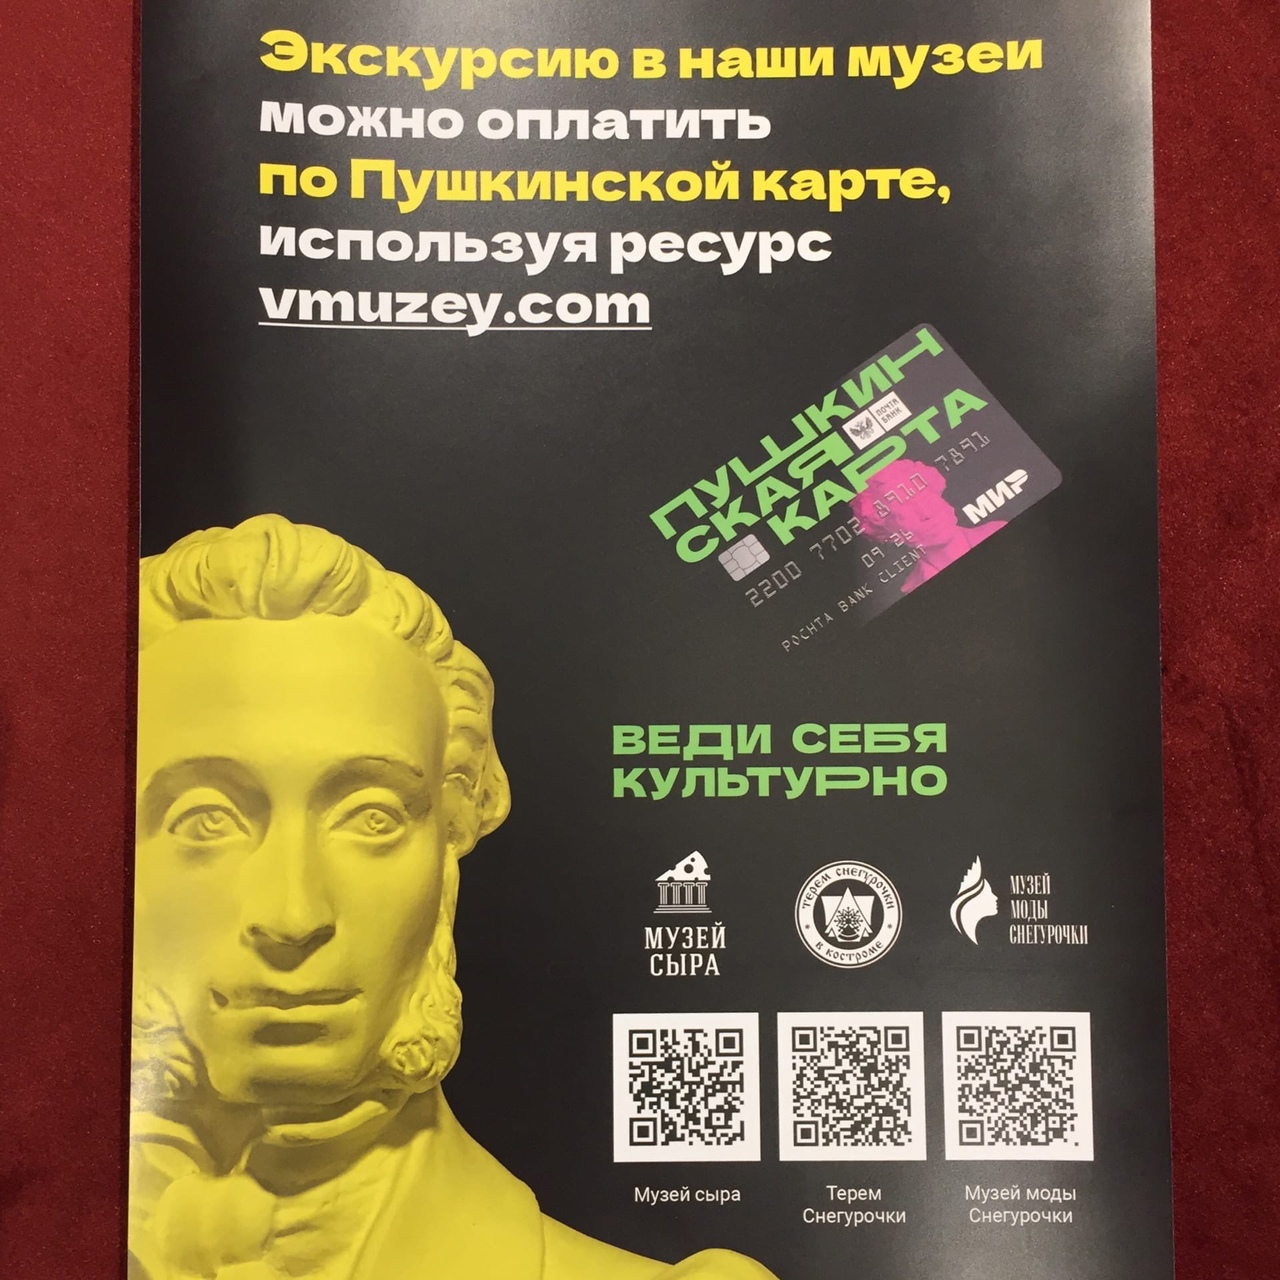 Экскурсию в нашем музее можно оплатить Пушкинской картой